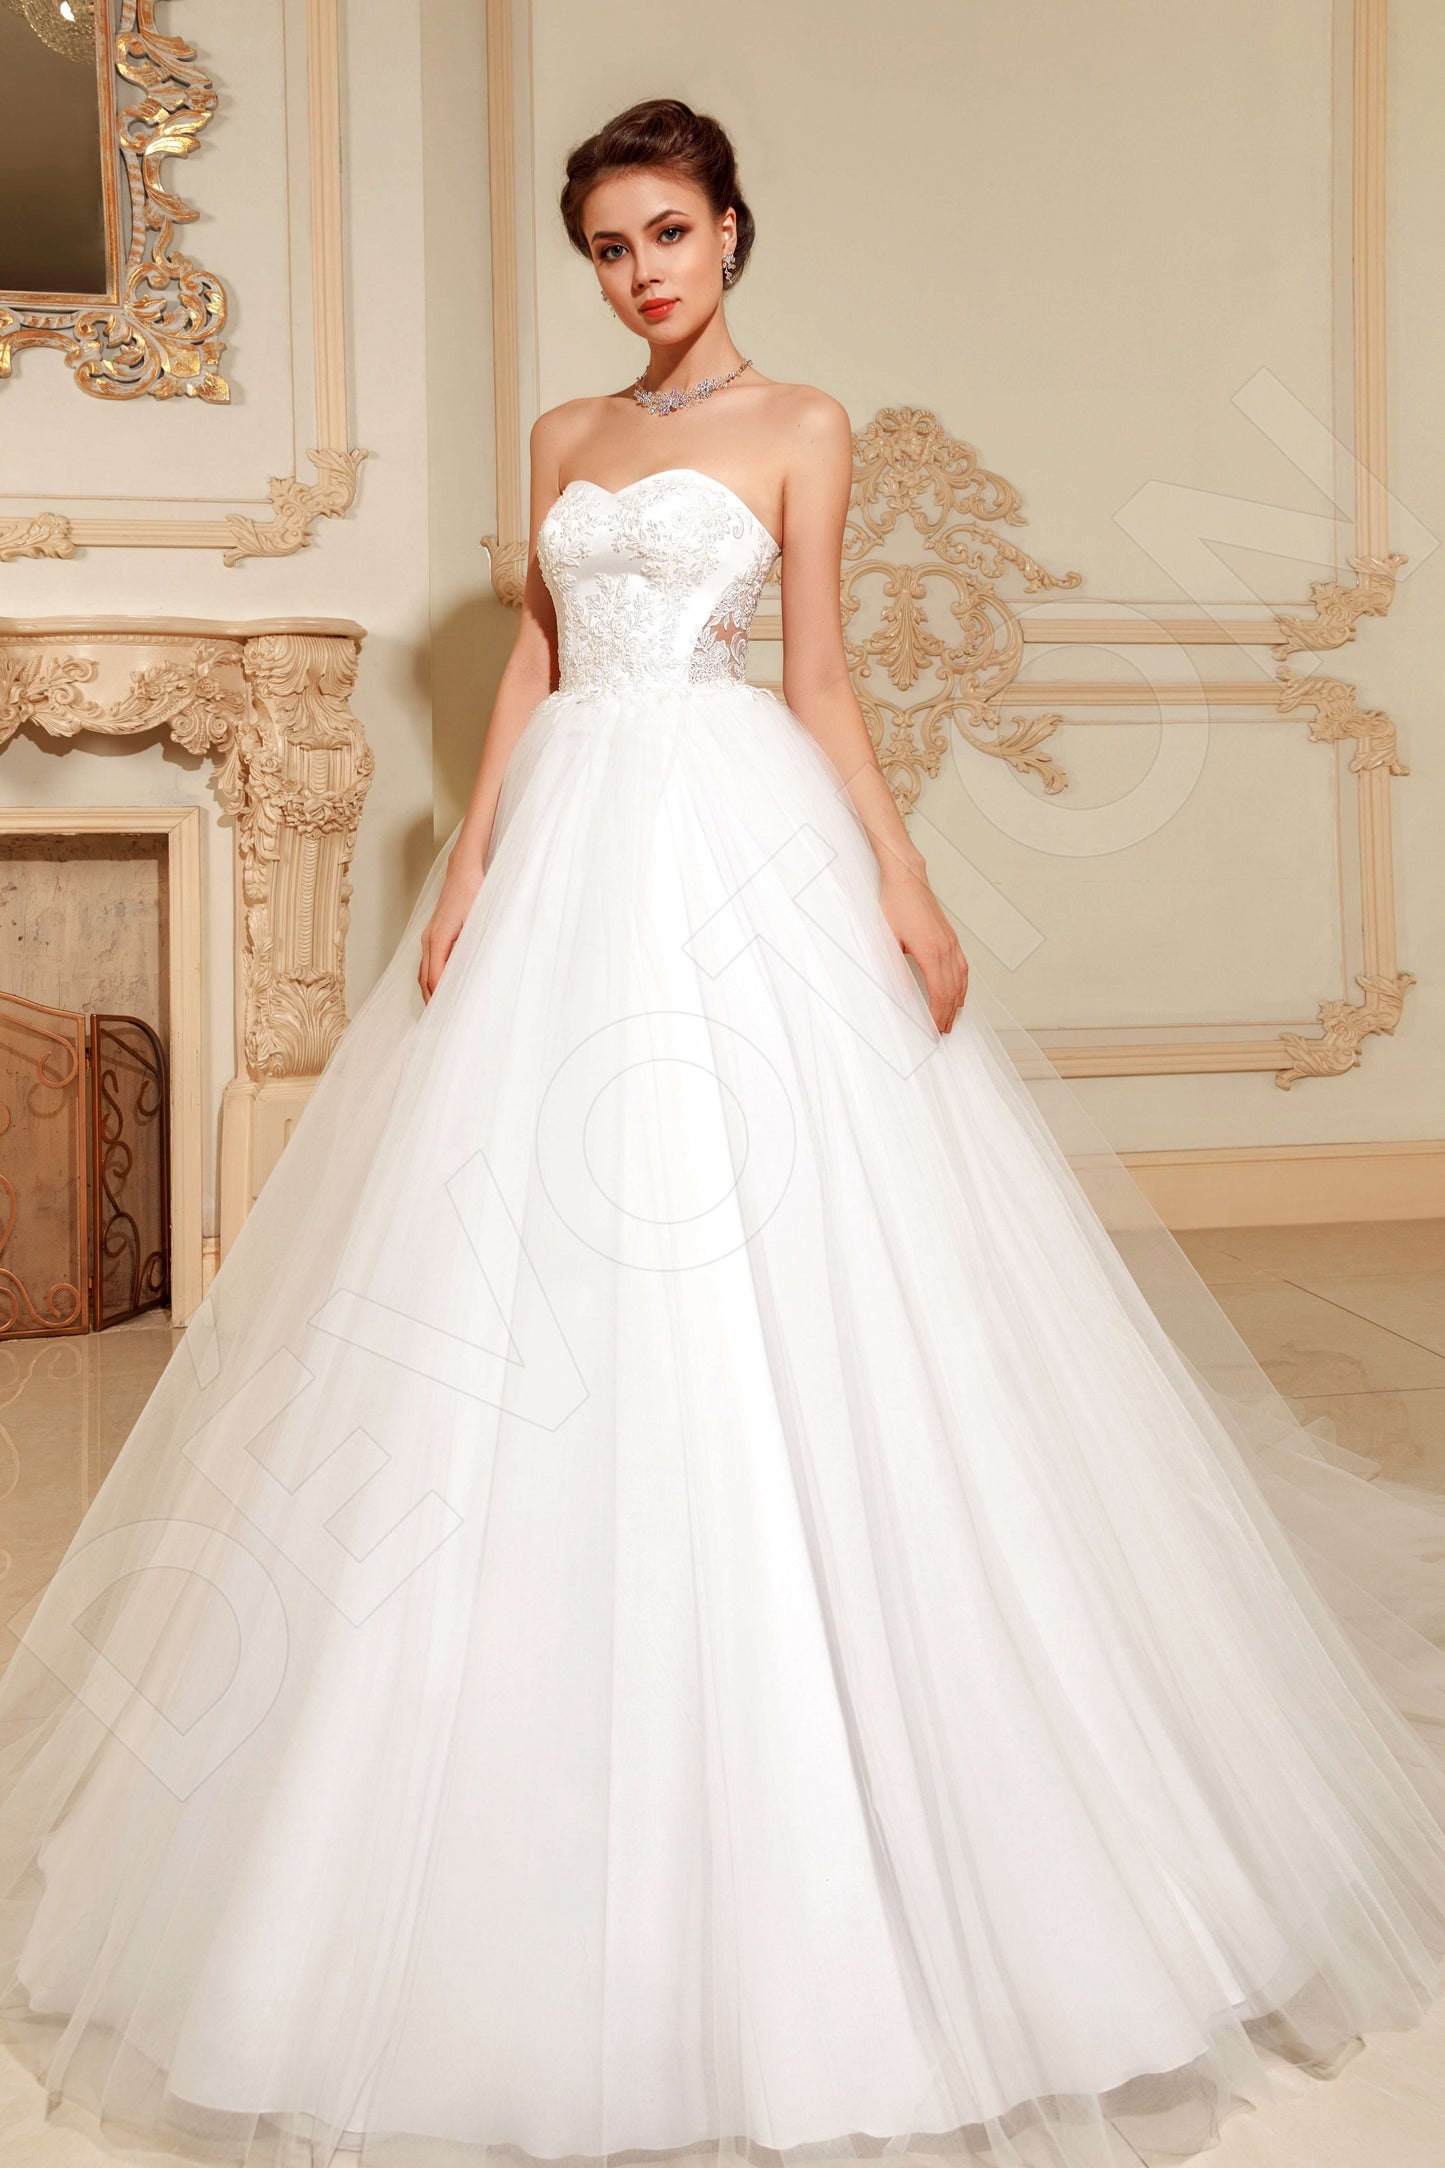 Nitana Open back Princess/Ball Gown Sleeveless Wedding Dress Front